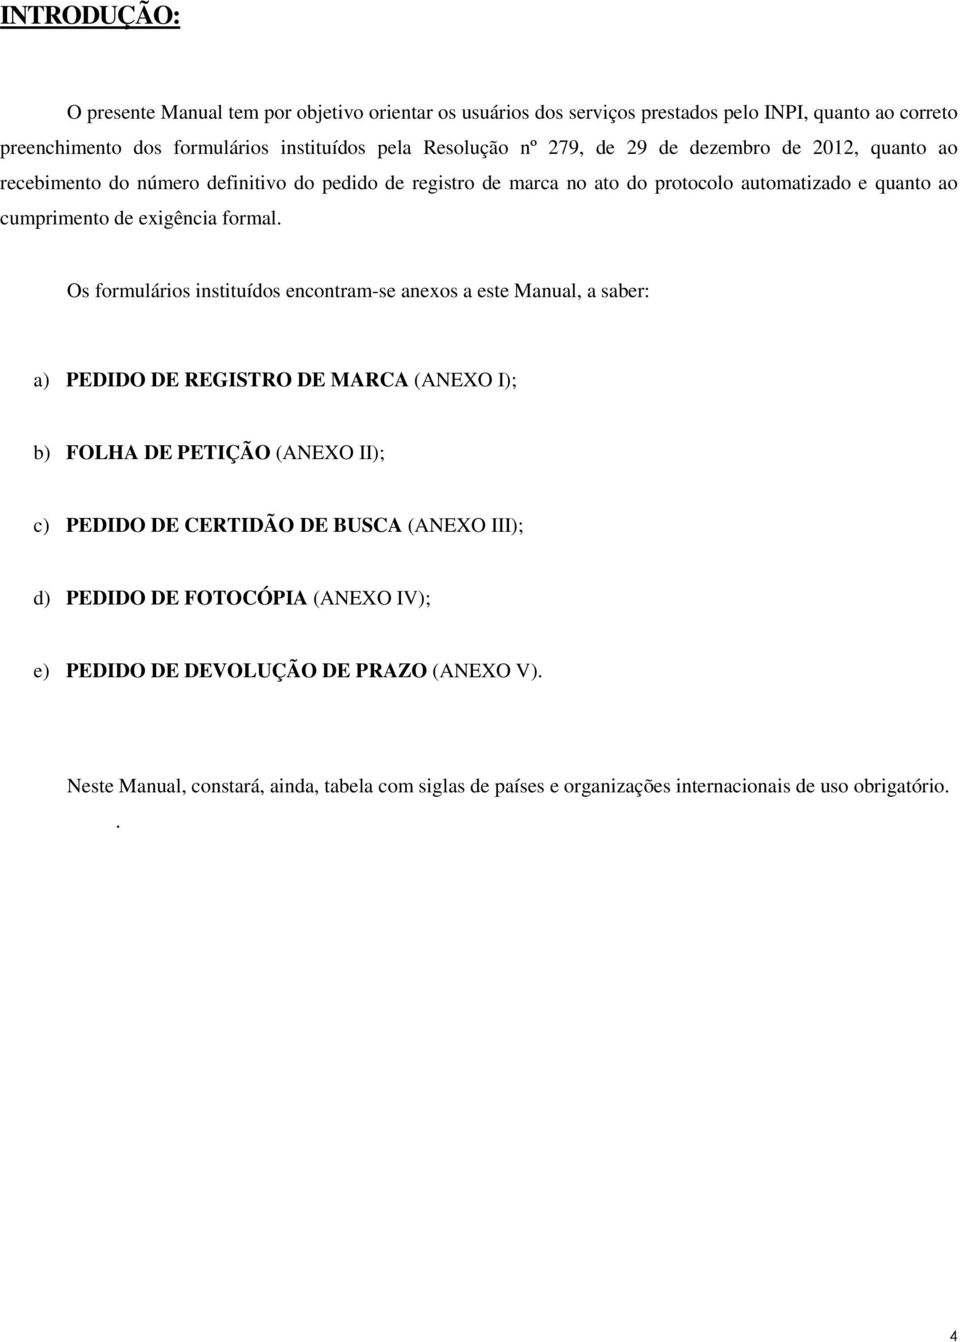 Os formulários instituídos encontram-se anexos a este Manual, a saber: a) PEDIDO DE REGISTRO DE MARCA (ANEXO I); b) FOLHA DE PETIÇÃO (ANEXO II); c) PEDIDO DE CERTIDÃO DE BUSCA (ANEXO